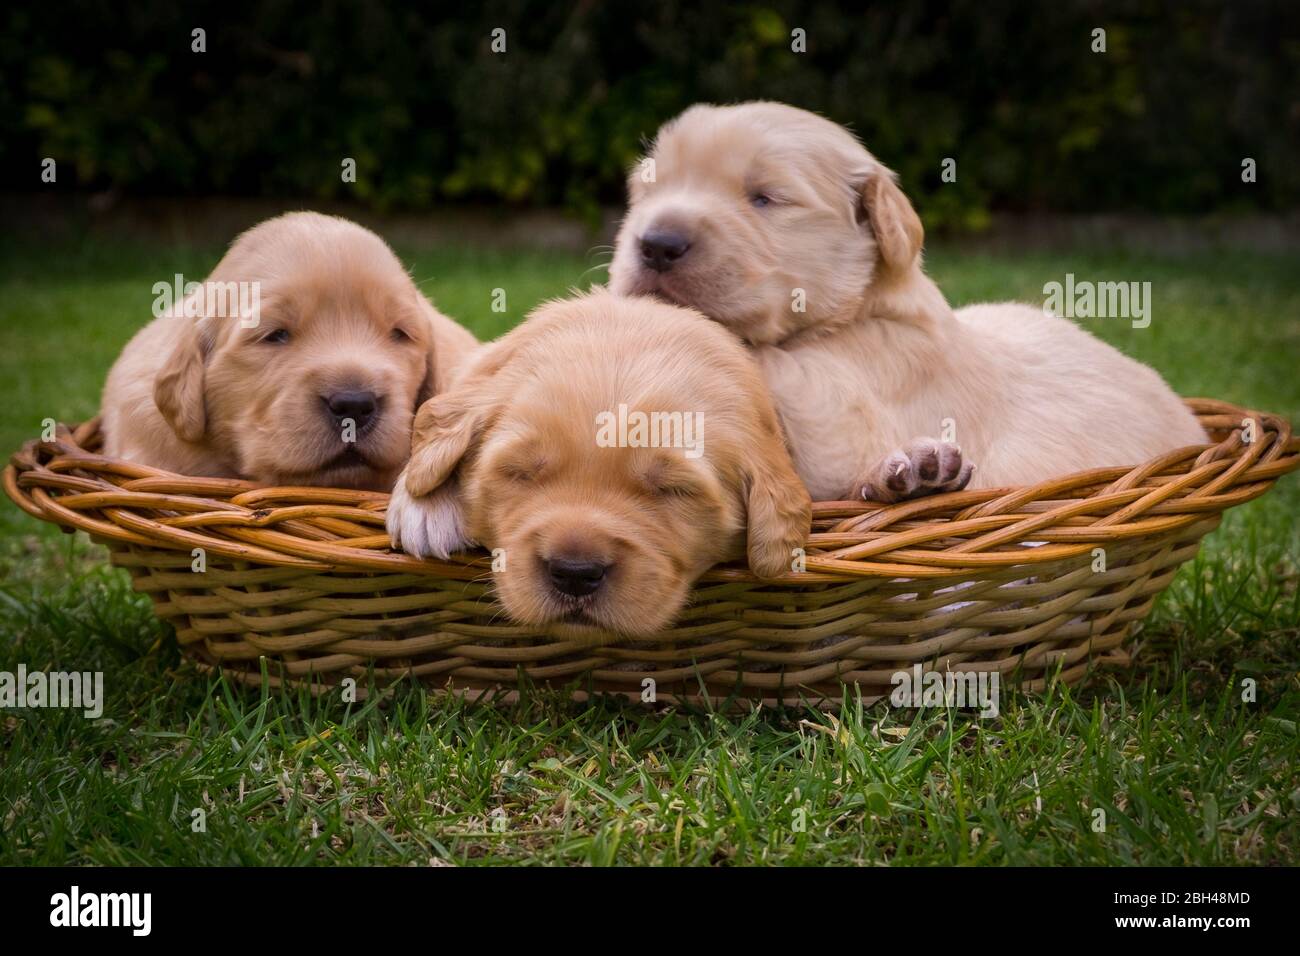 3 Golden retriever puppies photos Stock Photo